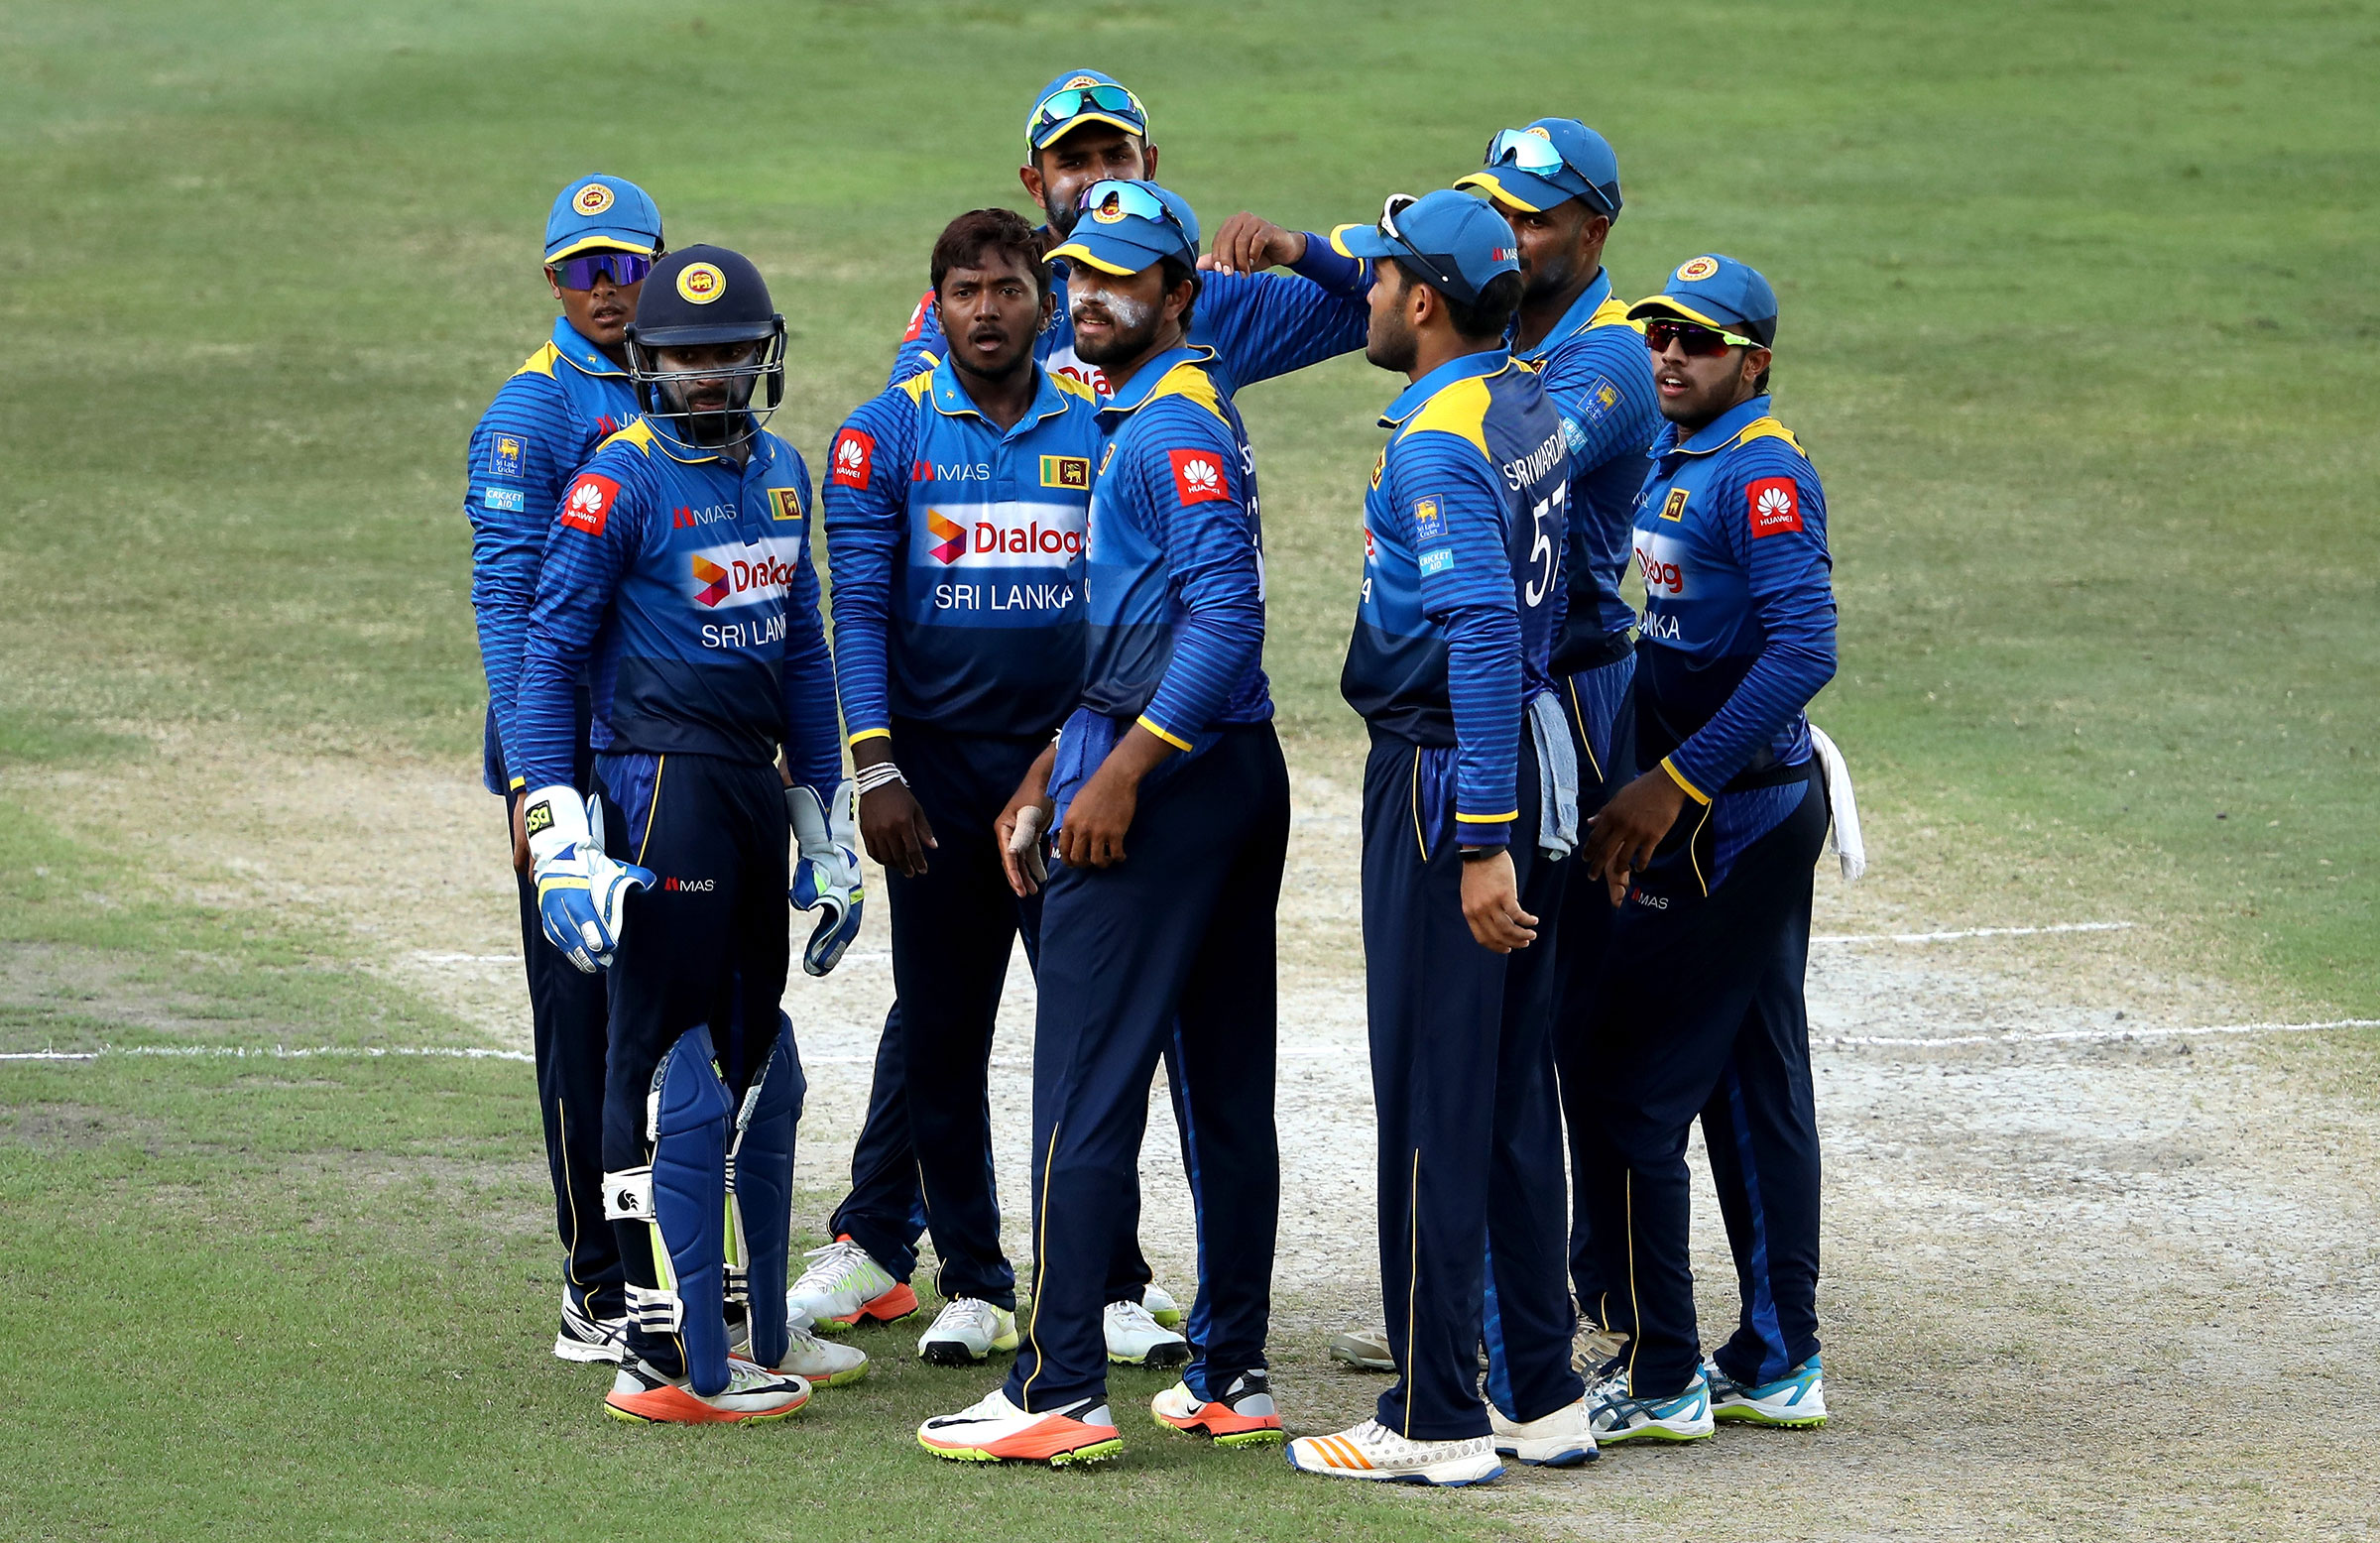 दक्षिण अफ्रीका के खिलाफ होने वाली वनडे सीरीज के लिए श्रीलंका टीम घोषित, 7 साल के लम्बे अन्तराल के बाद इस दिग्गज की हुई टीम में वापसी 1